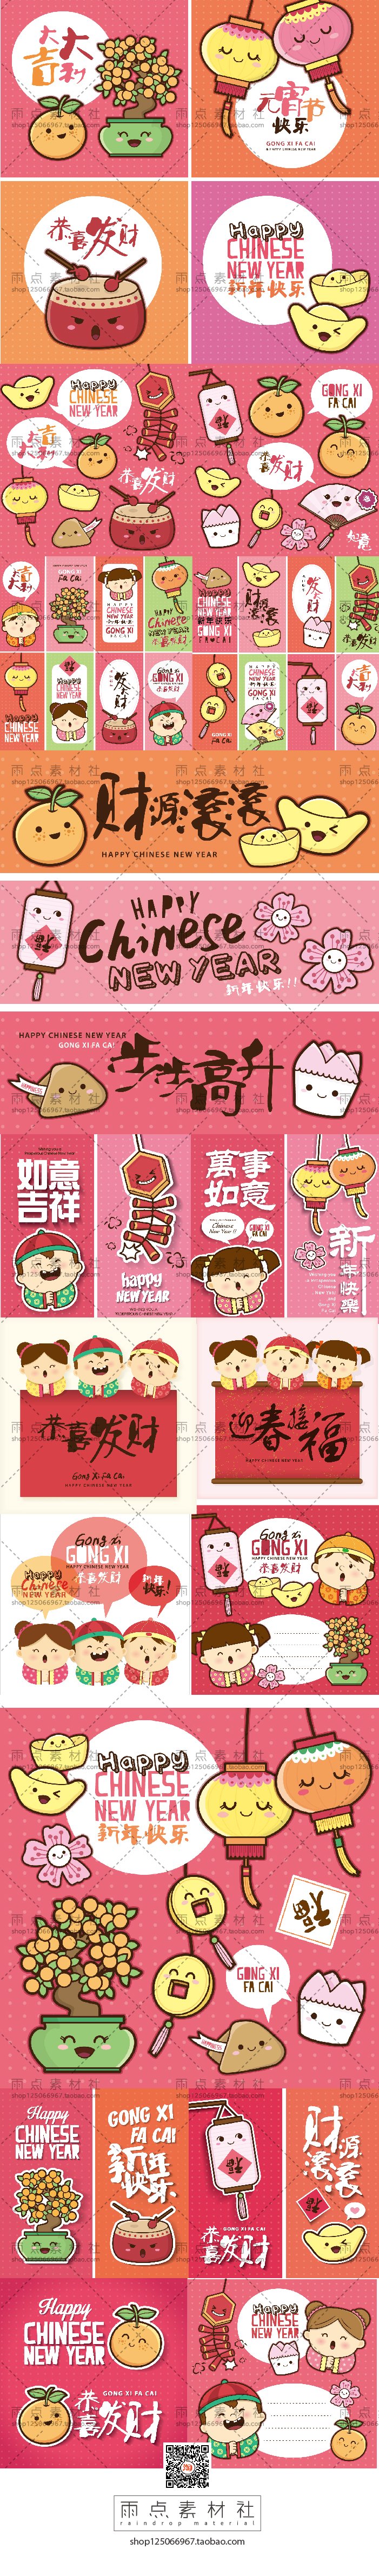 春节新年可爱卡通对联珲春插画 中国小孩卡通人物 ai矢量设计素材